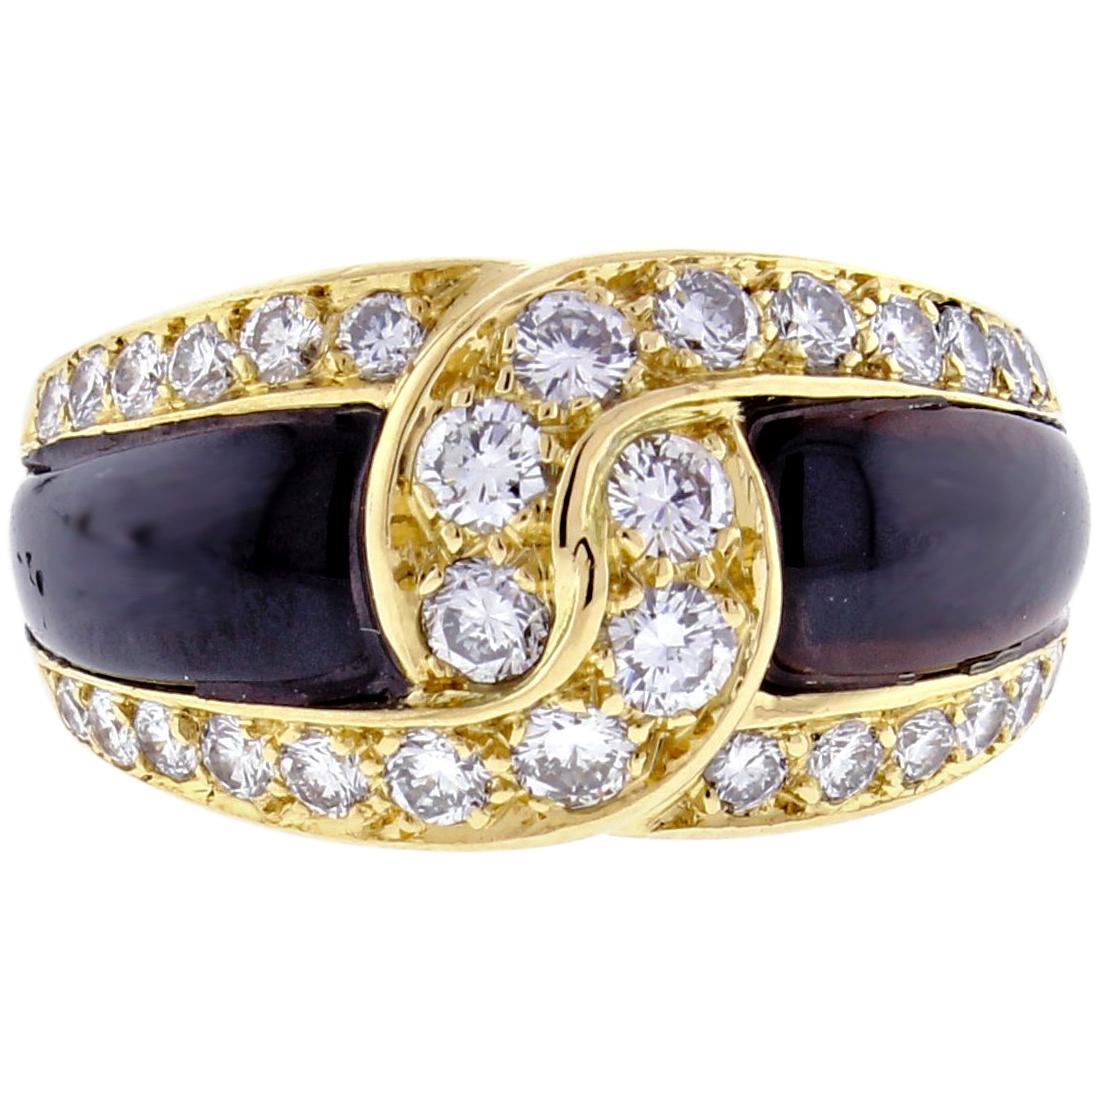 Van Cleef & Arpels Black Onyx and Diamond Ring